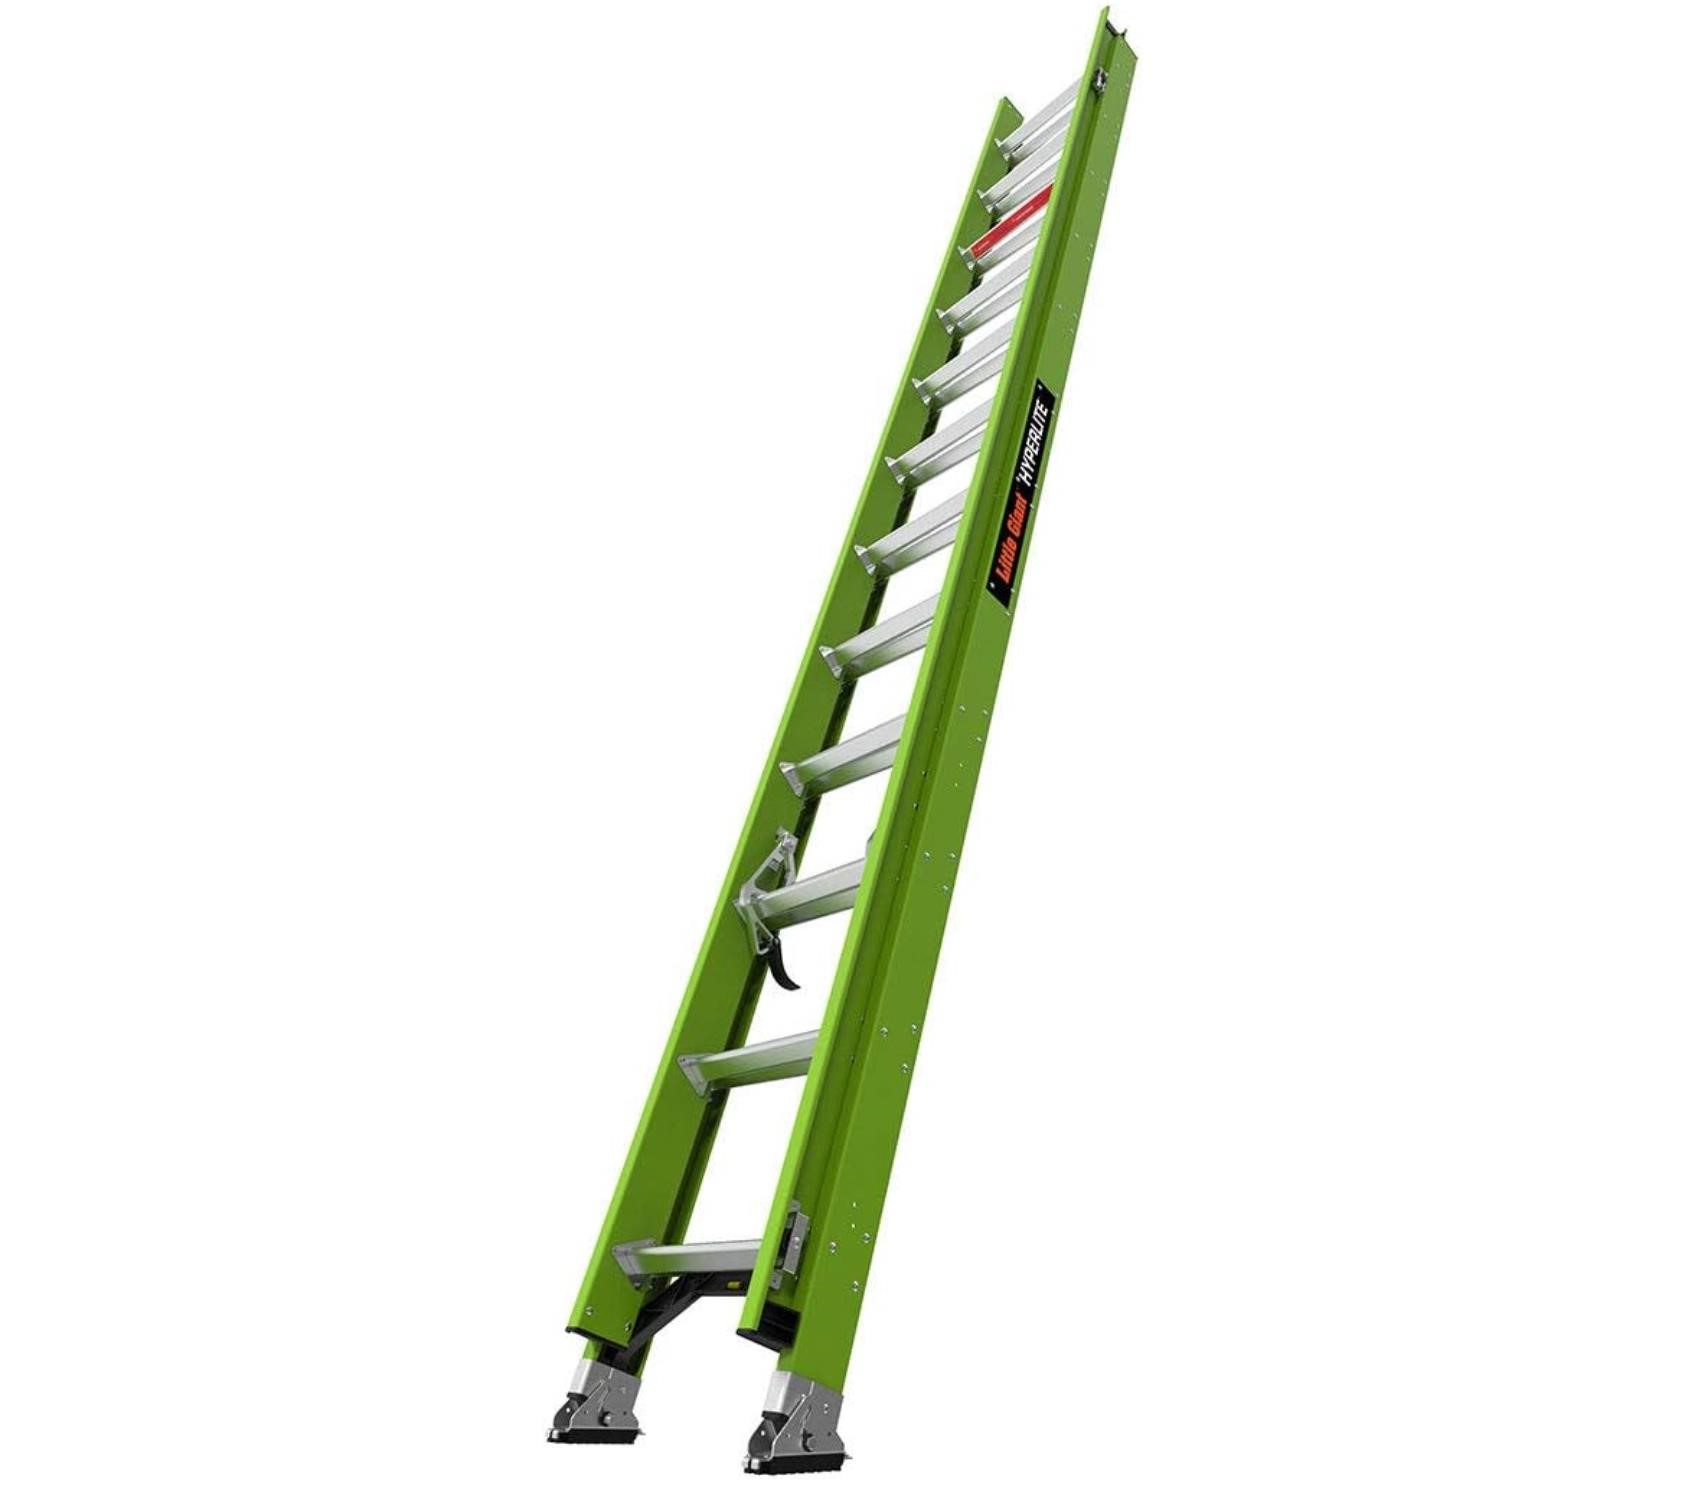 HyperLite 24' Fiberglass Ladder  300 lbs